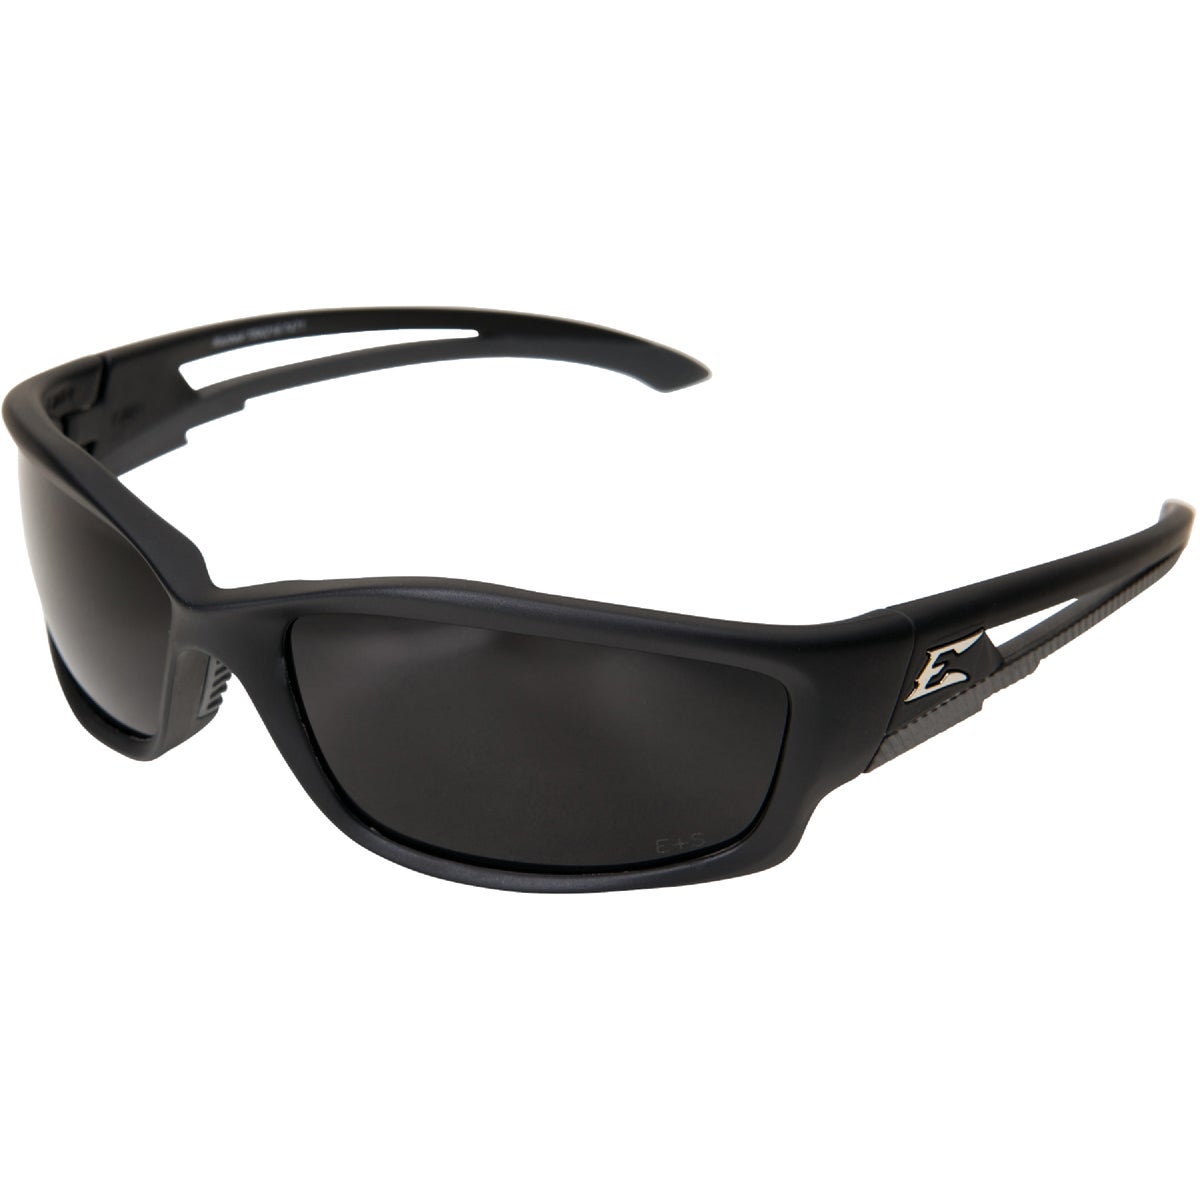 Edge Eyewear Kazbek Torque Red E Matte Black Frame Safety Glasses with Polarized Smoke Lens